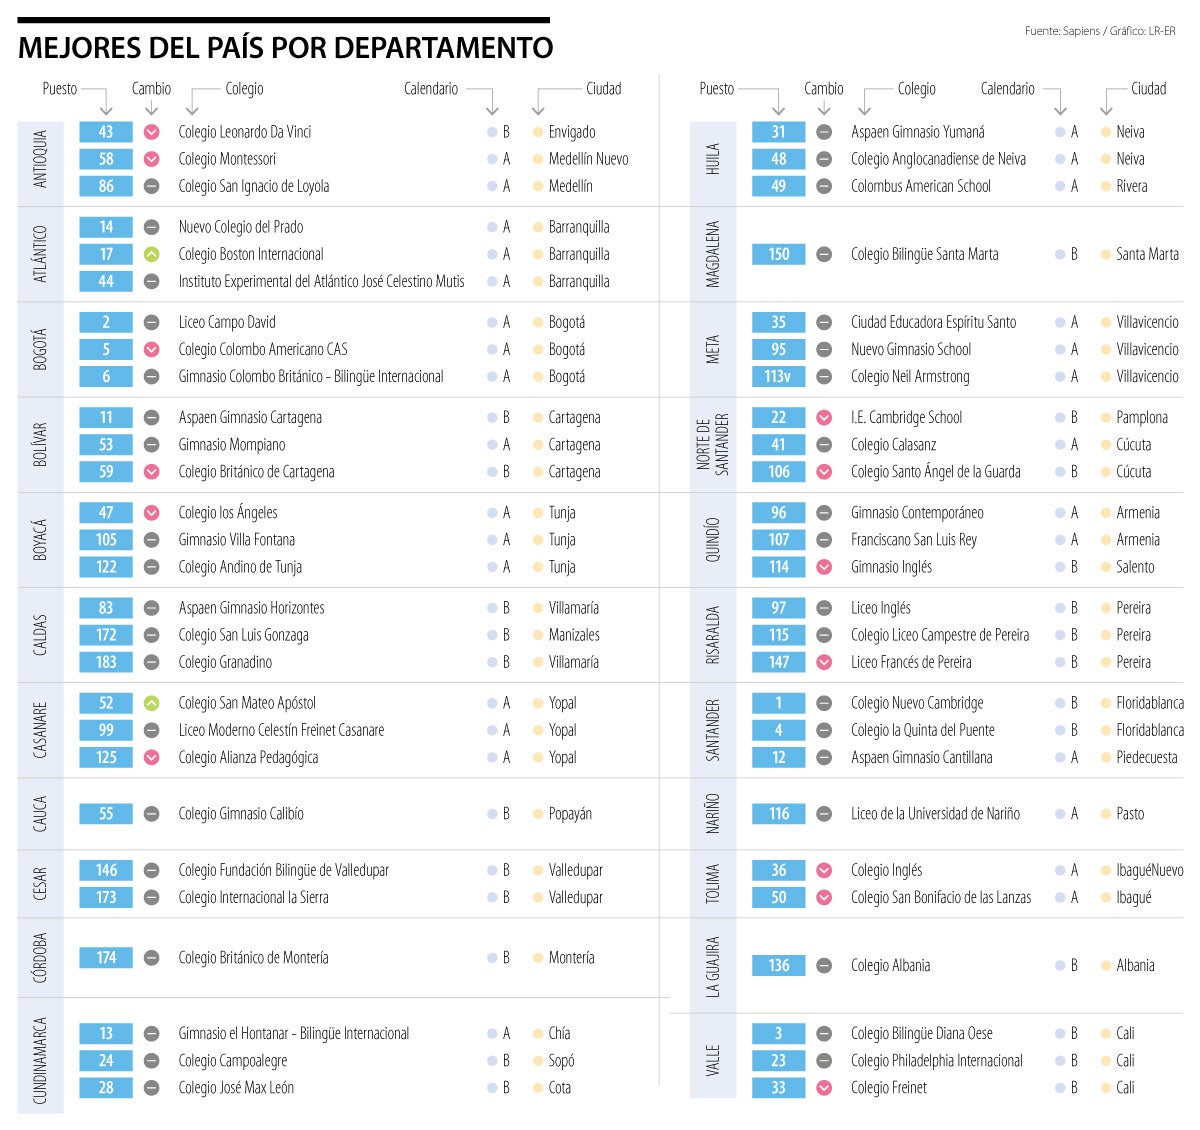 Estos son los 54 mejores colegios de Colombia por cada departamento